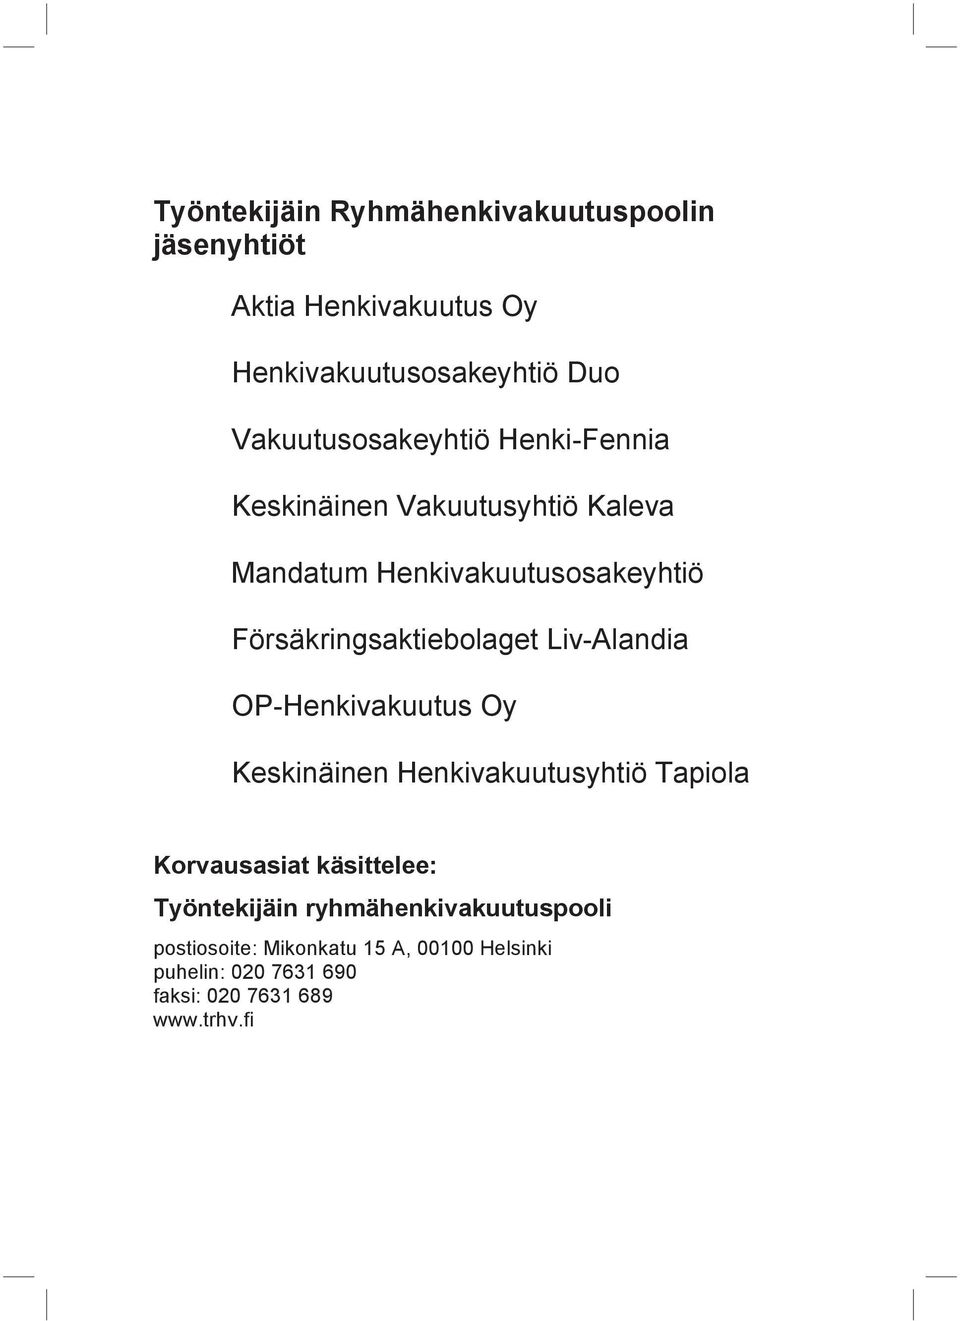 Försäkringsaktiebolaget Liv-Alandia OP-Henkivakuutus Oy Keskinäinen Henkivakuutusyhtiö Tapiola Korvausasiat